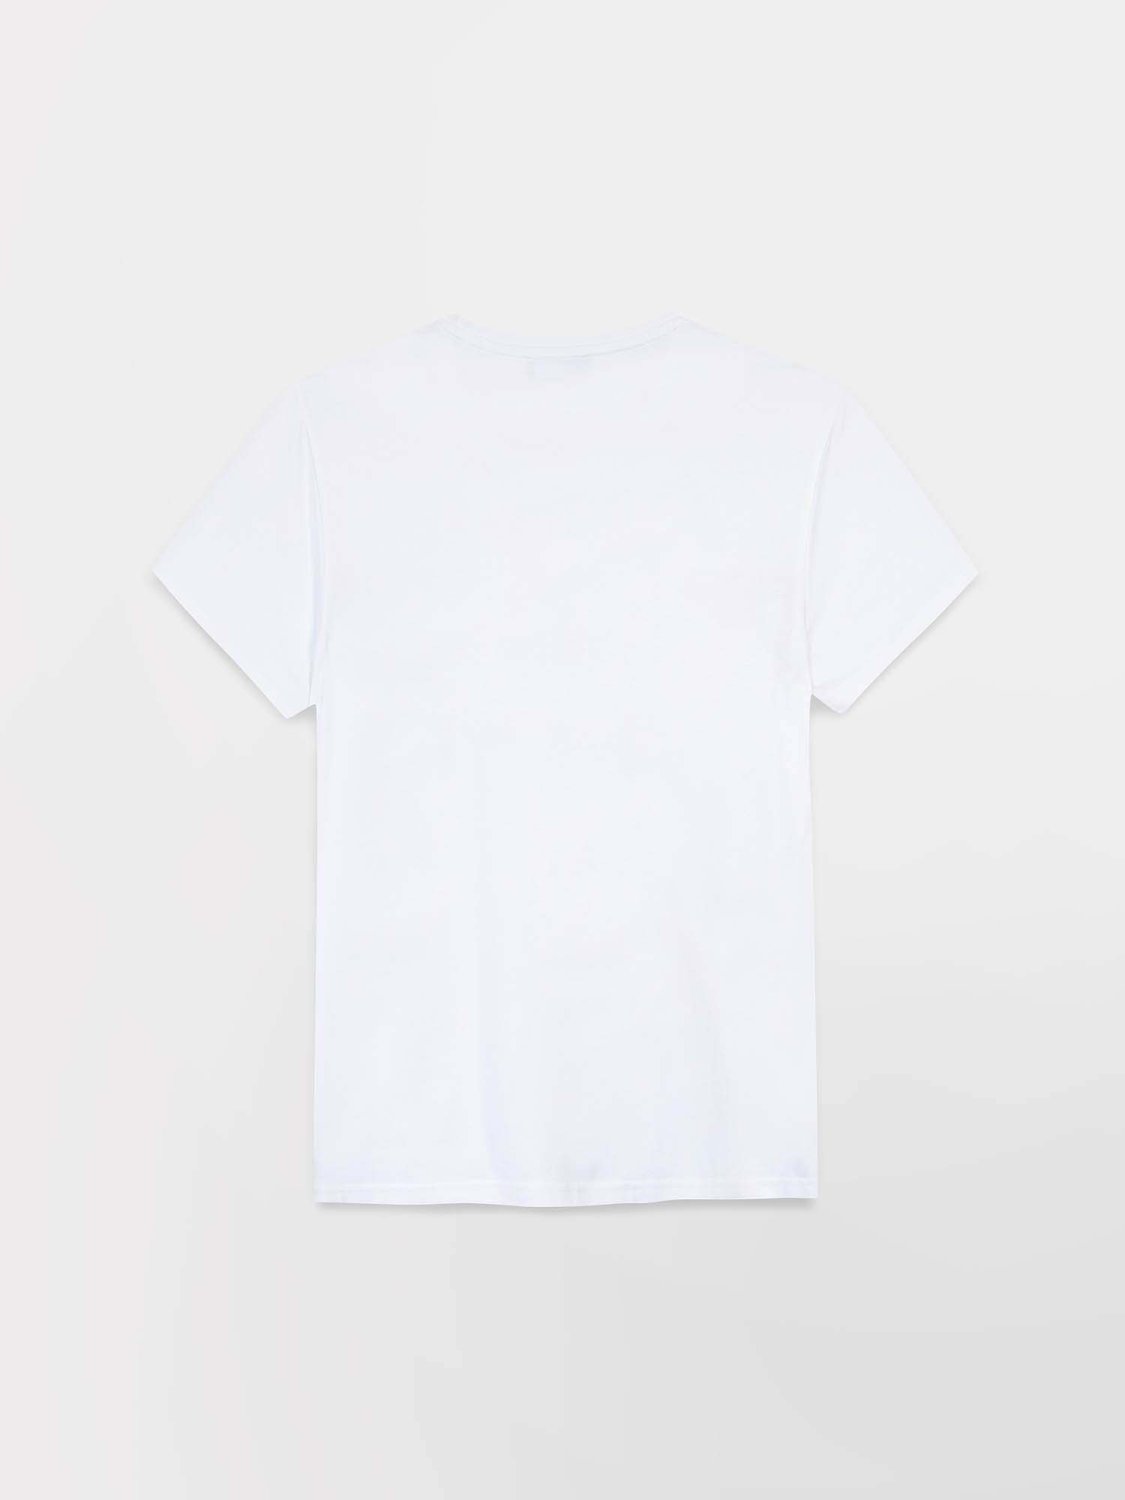 Tee Shirt Homme Manches Courtes Coton Biologique Blanc